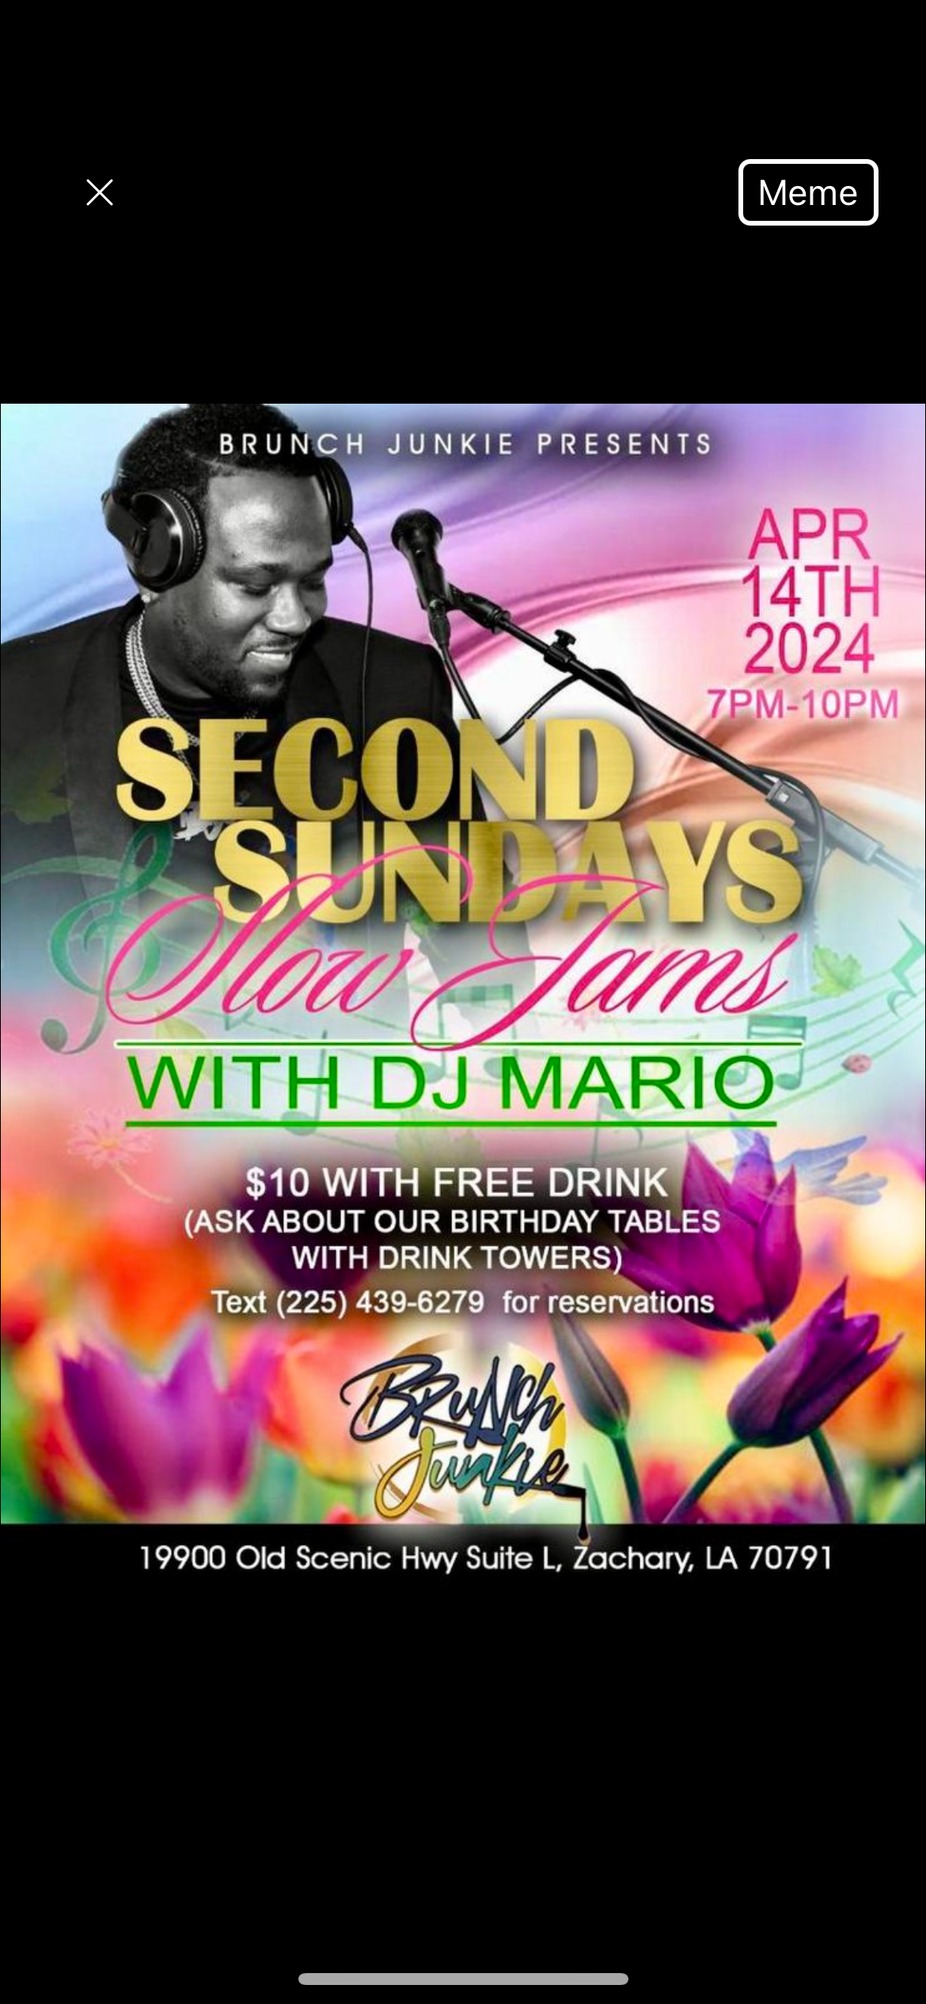 Second Sundays Slow Jams with DJ Mario event photo